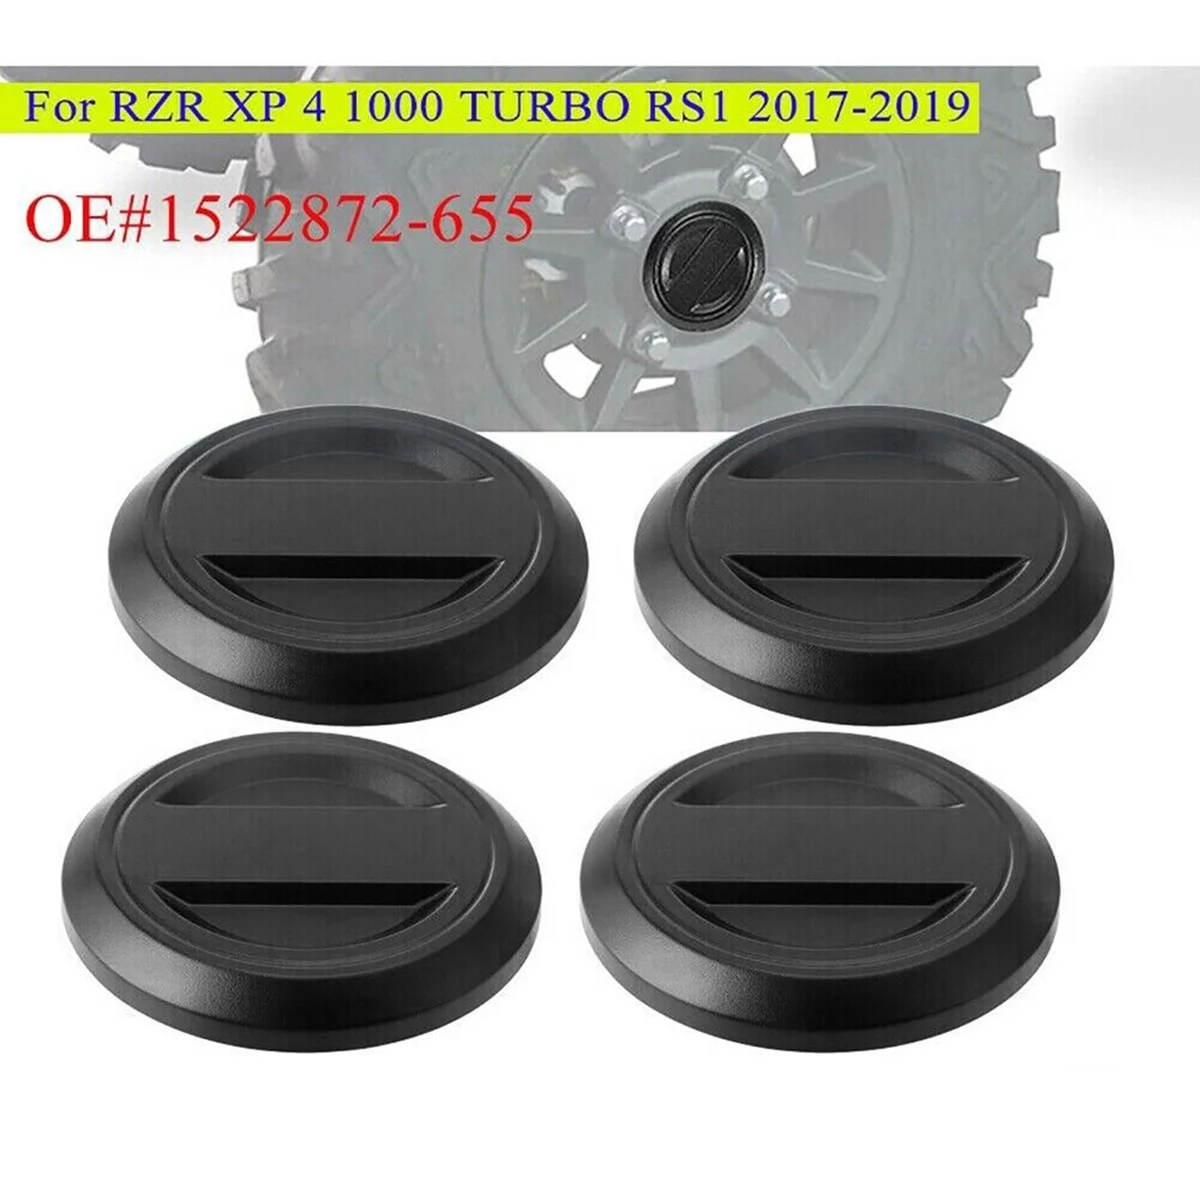 

4Pcs Wheel Tire Rim Hub Center Cap Cover 1522872-655 for Polaris 2017+ RZR XP XP4 RS1 1000 Turbo / Center